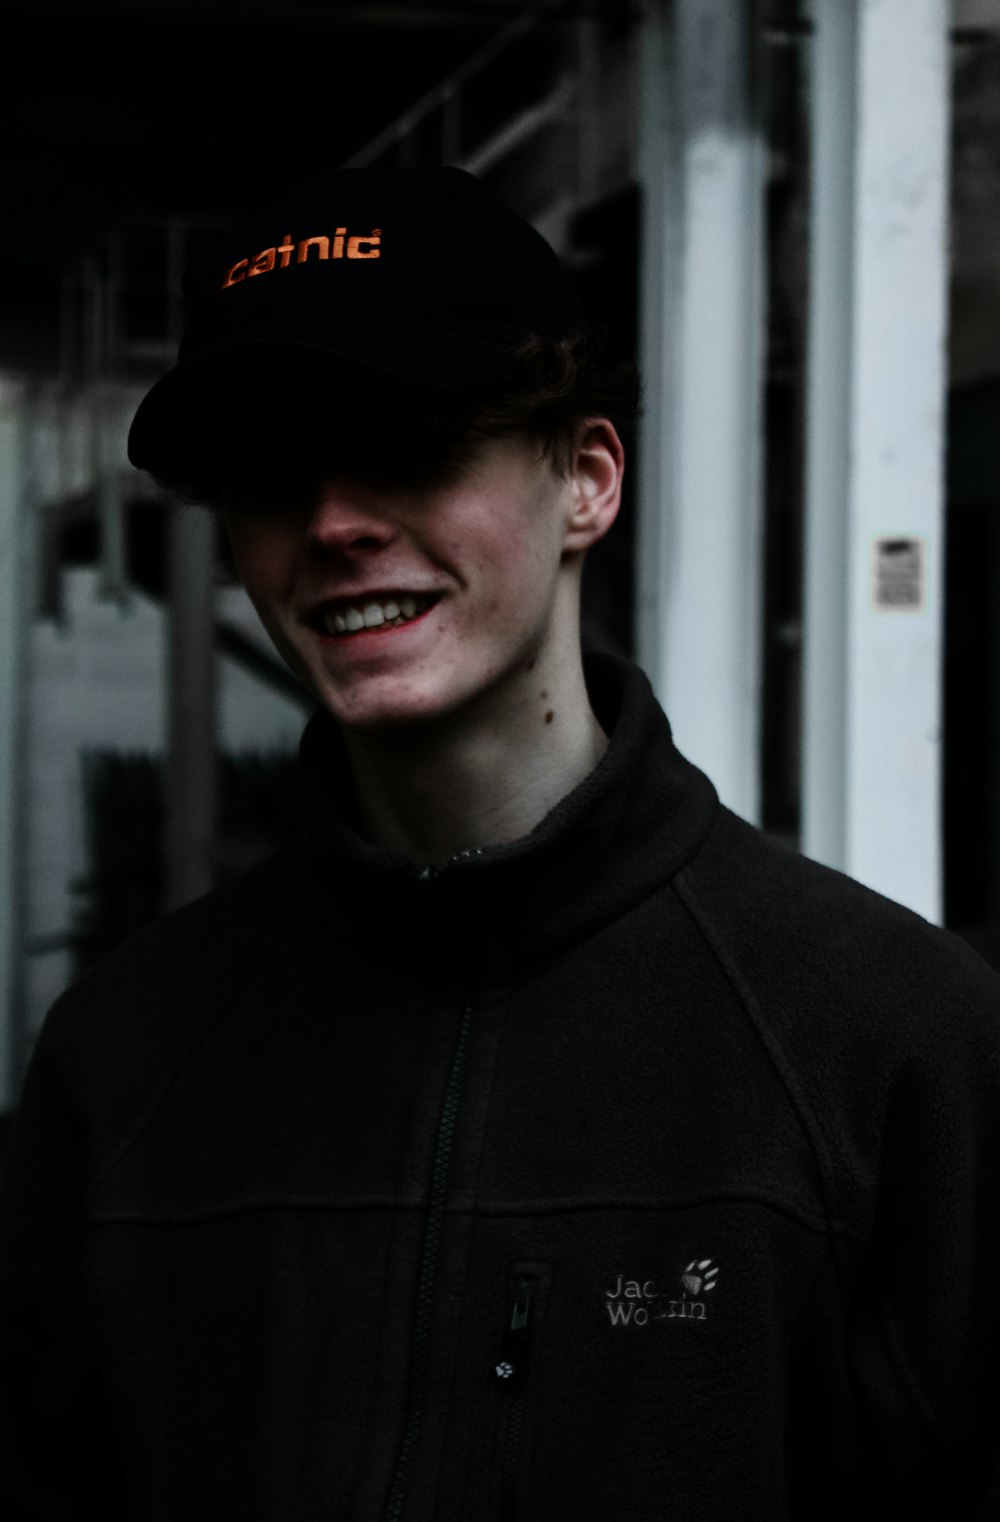 man in black zip up hoodie wearing black cap